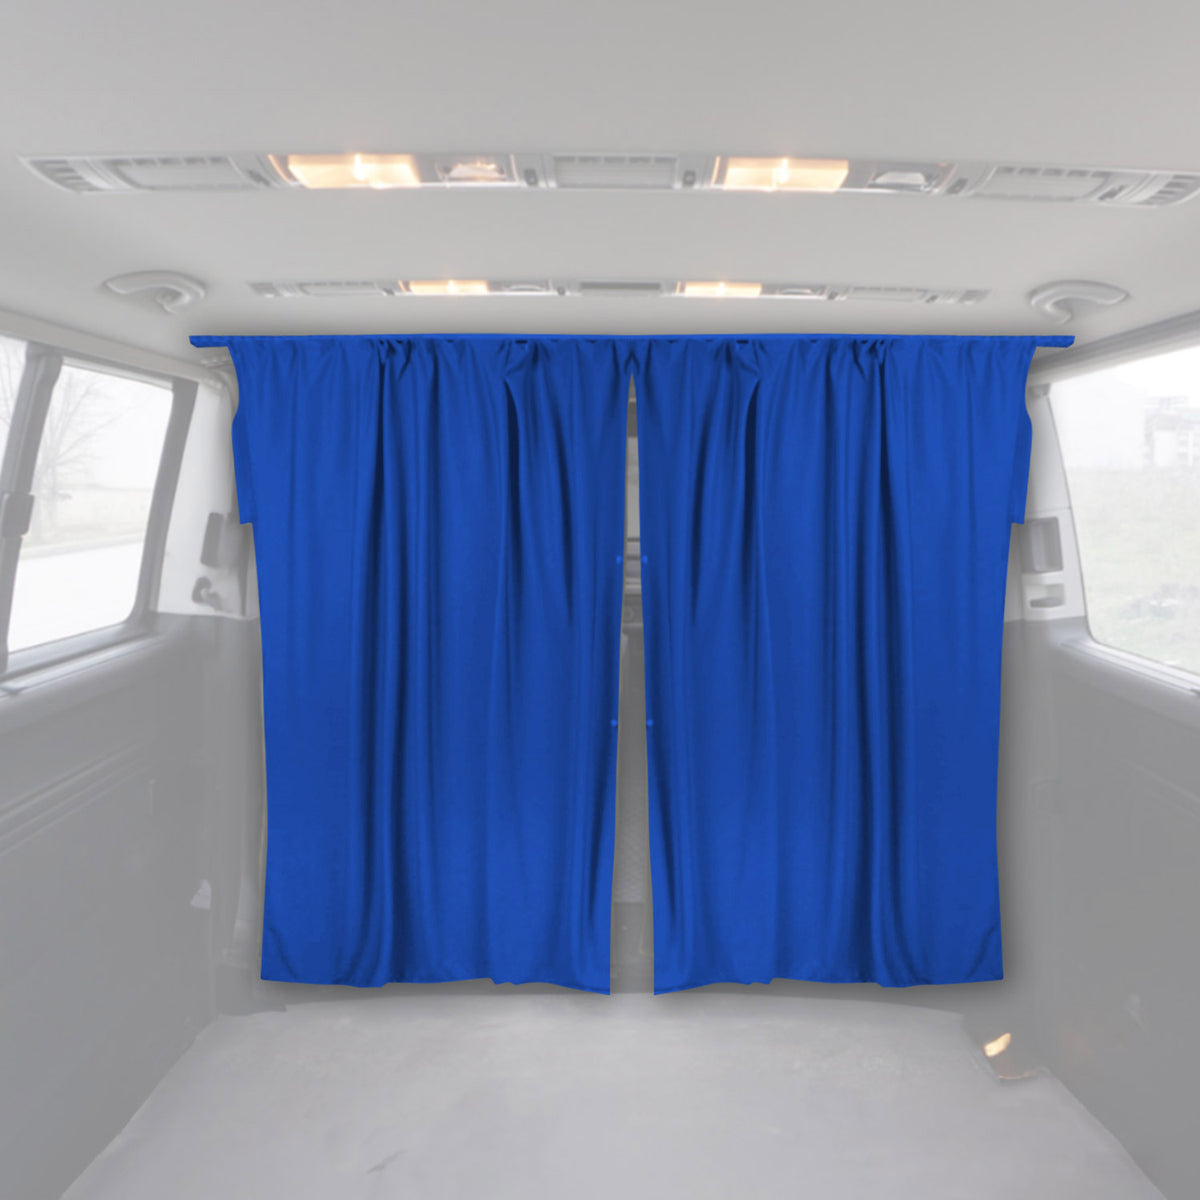 Fahrerhaus Führerhaus Gardinen Sonnenschutz für Dacia Dokker Blau 2tlg